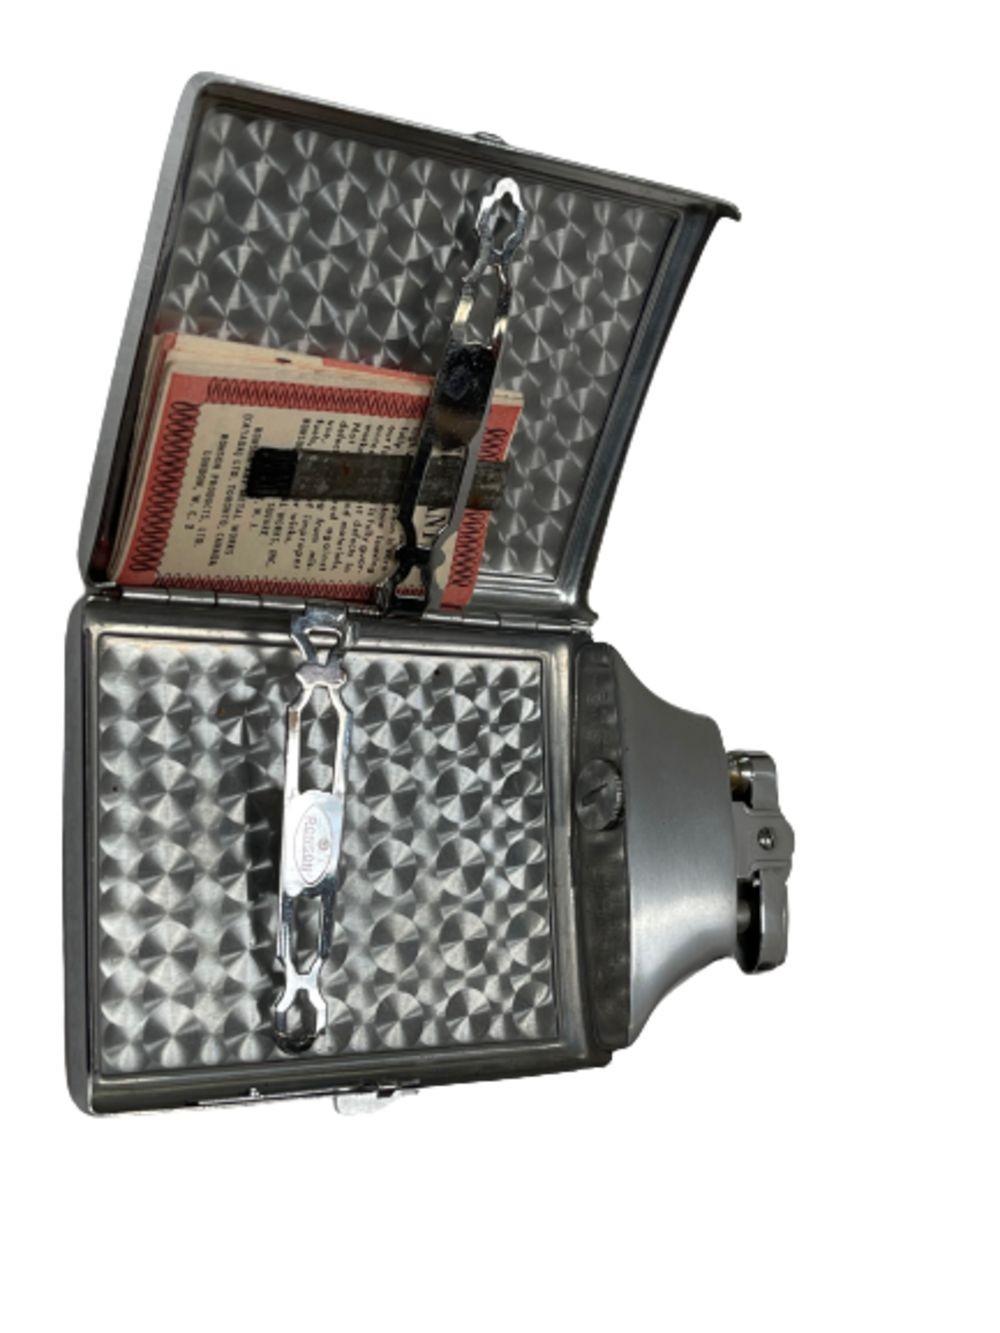 Art Deco Ronson Mastercase Cigarette Lighter Case Combo With Original Box For Sale 1